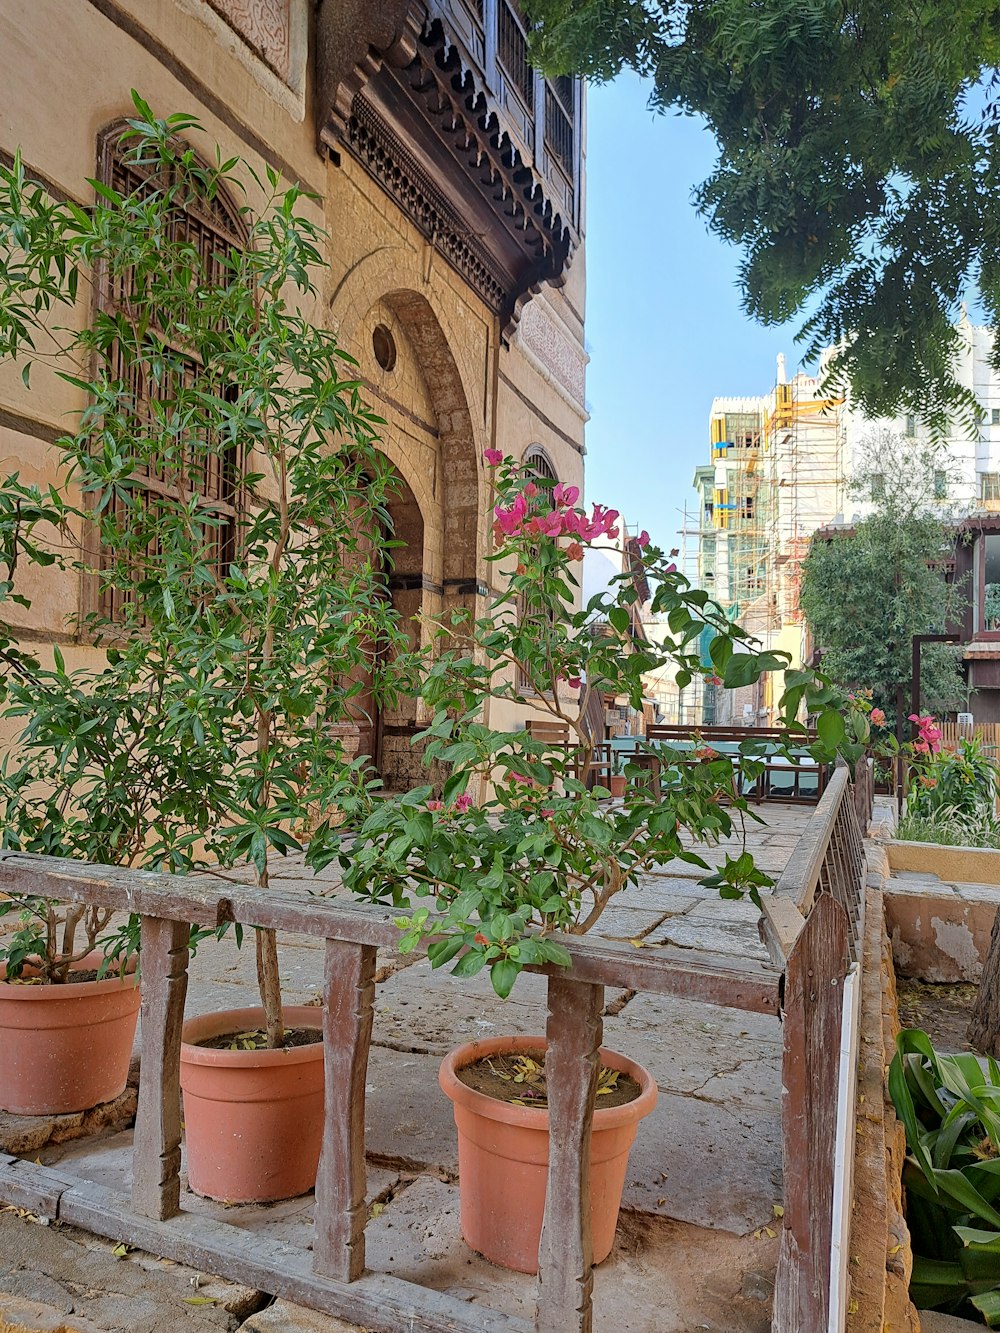 Un grupo de plantas en maceta frente a un edificio